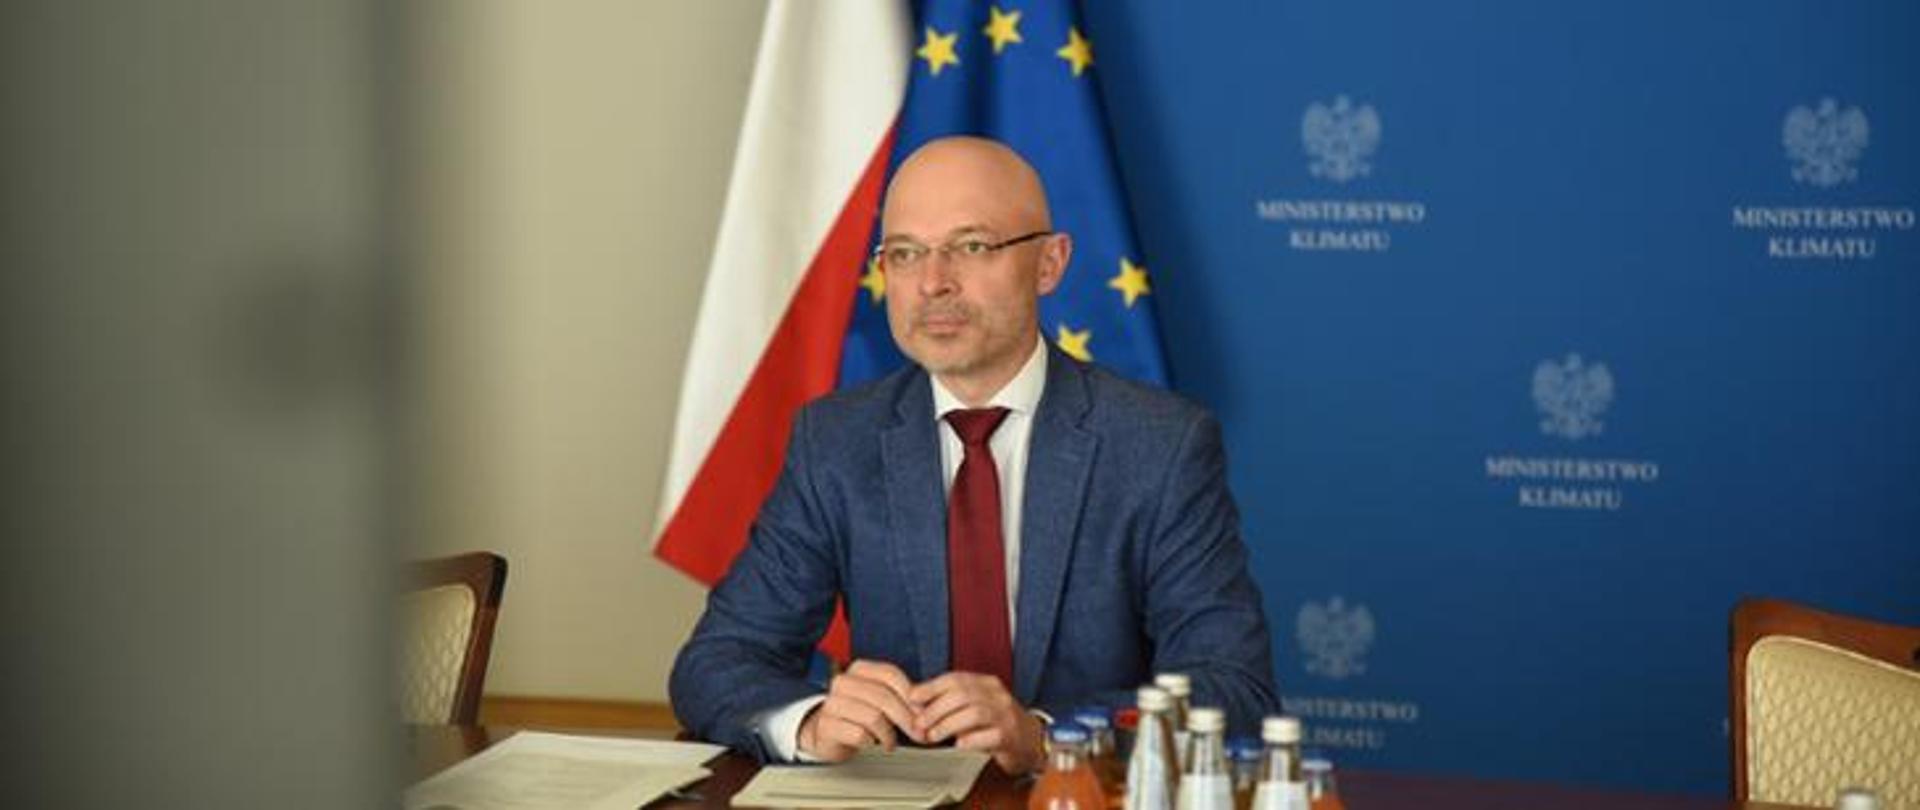 Minister klimatu Michał Kurtyka